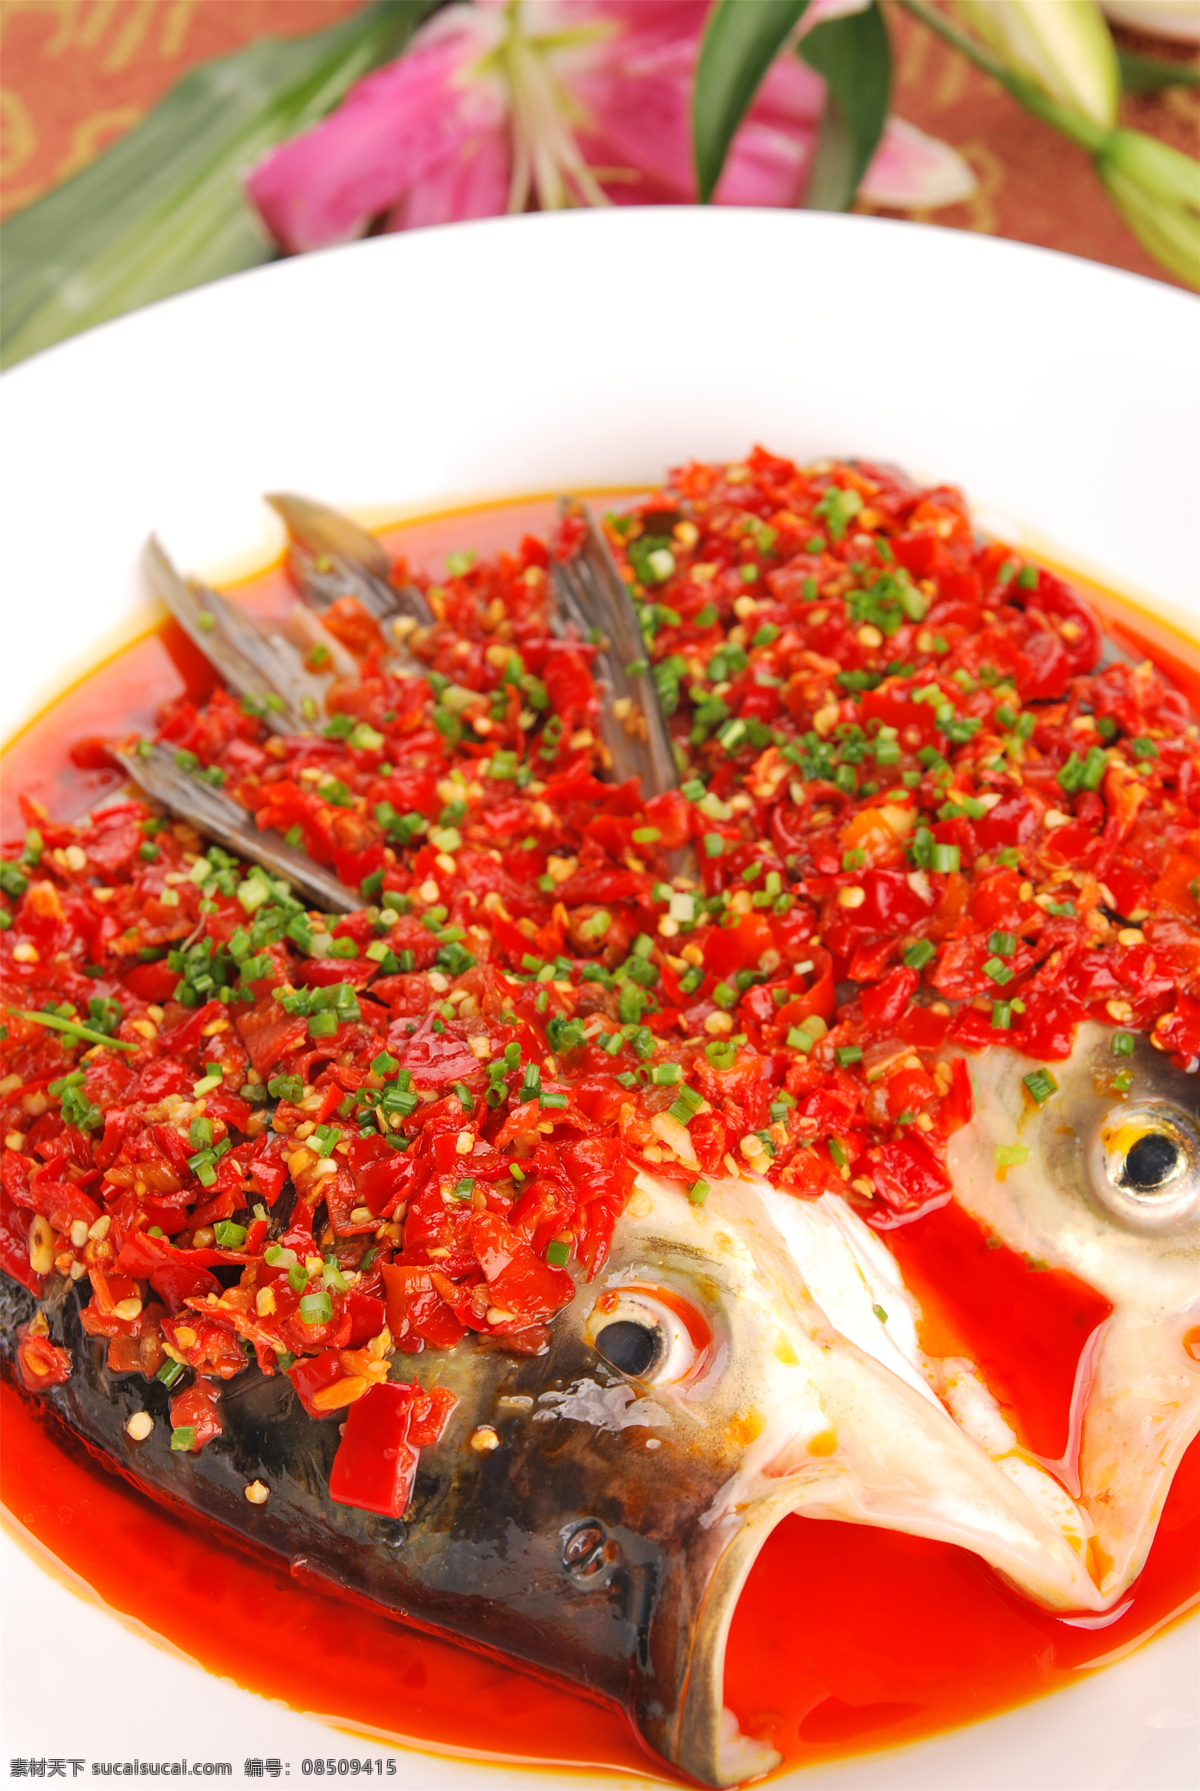 剁椒鱼头图片 剁椒鱼头 美食 传统美食 餐饮美食 高清菜谱用图